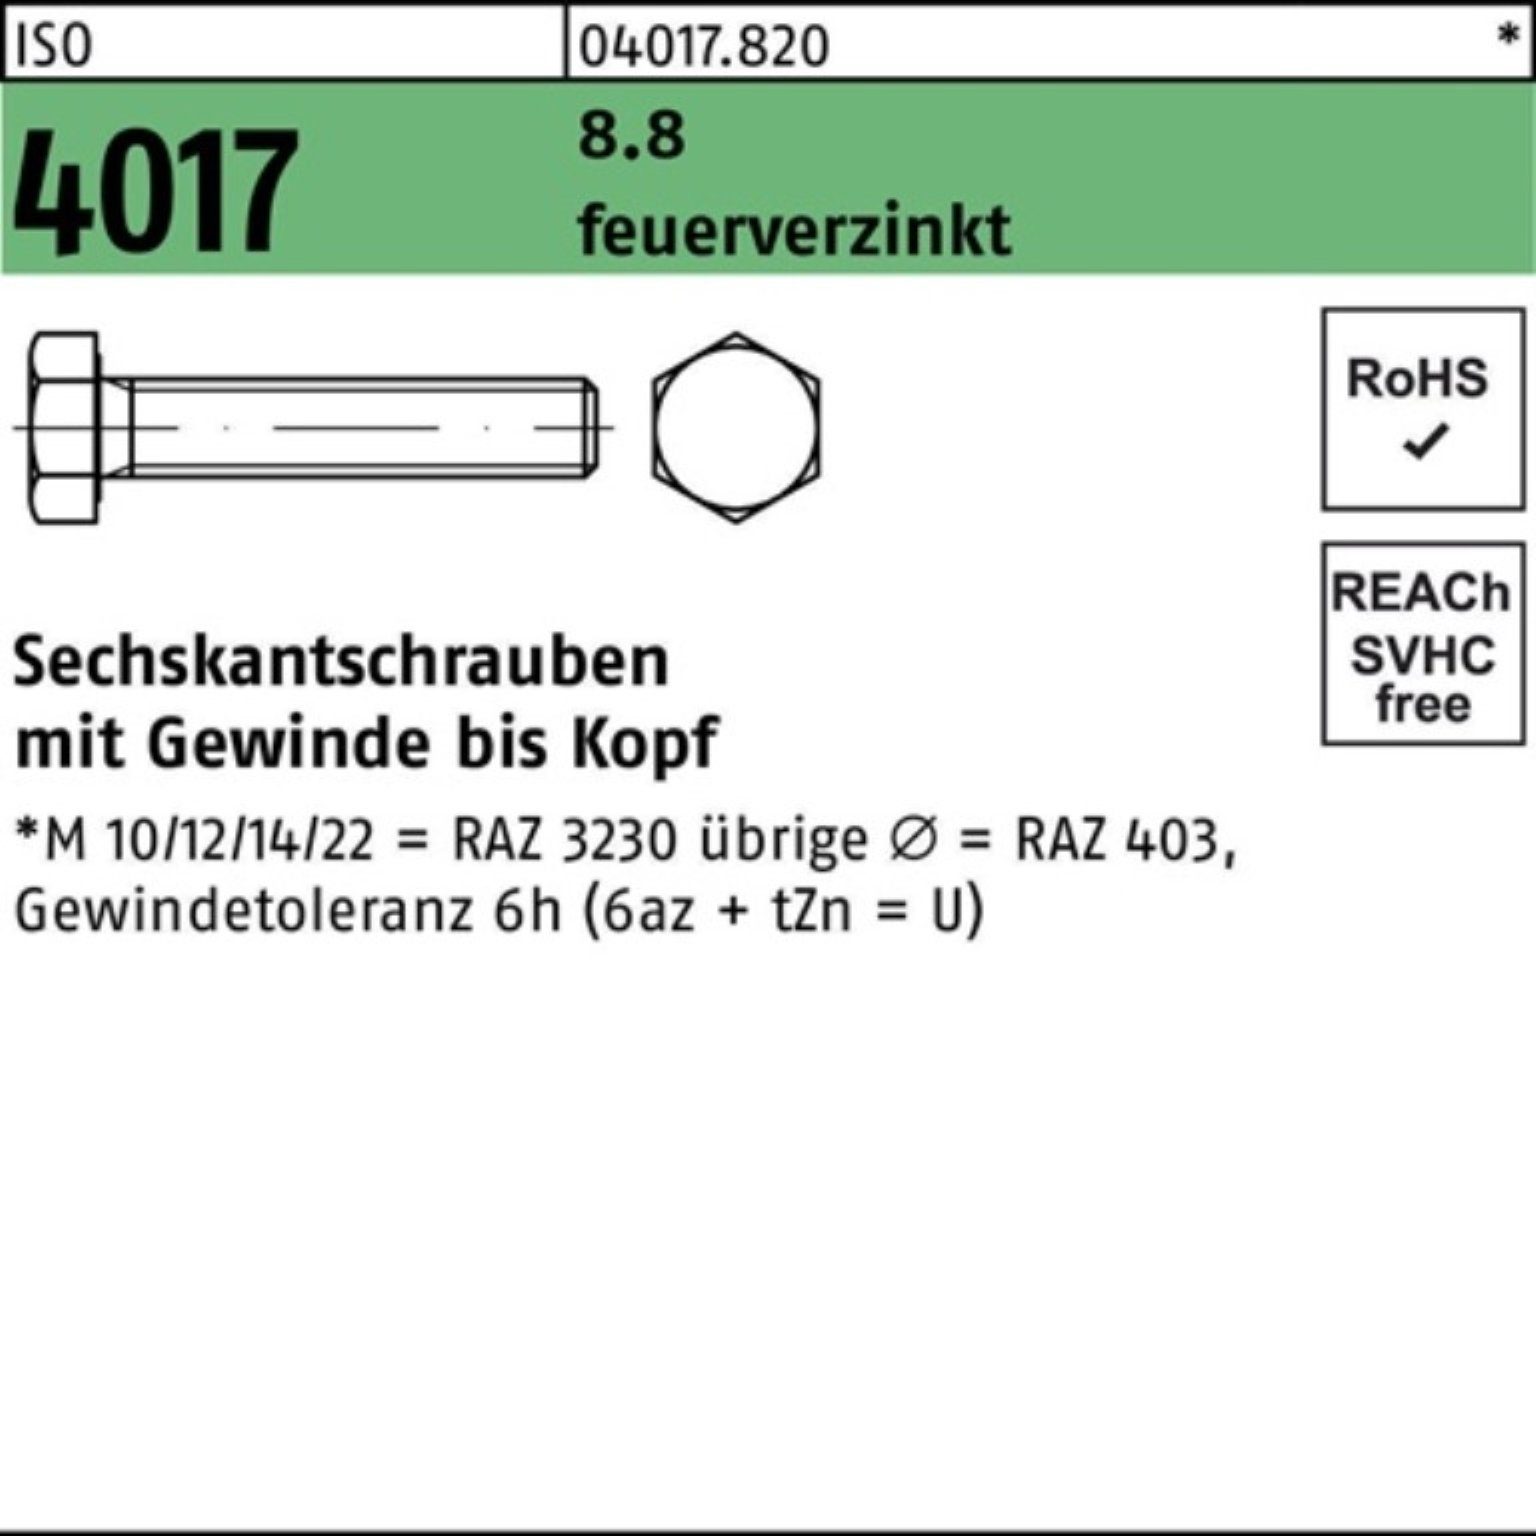 Bufab Sechskantschraube 100er Pack 180 VG ISO 8.8 St feuerverz. 1 Sechskantschraube M20x 4017